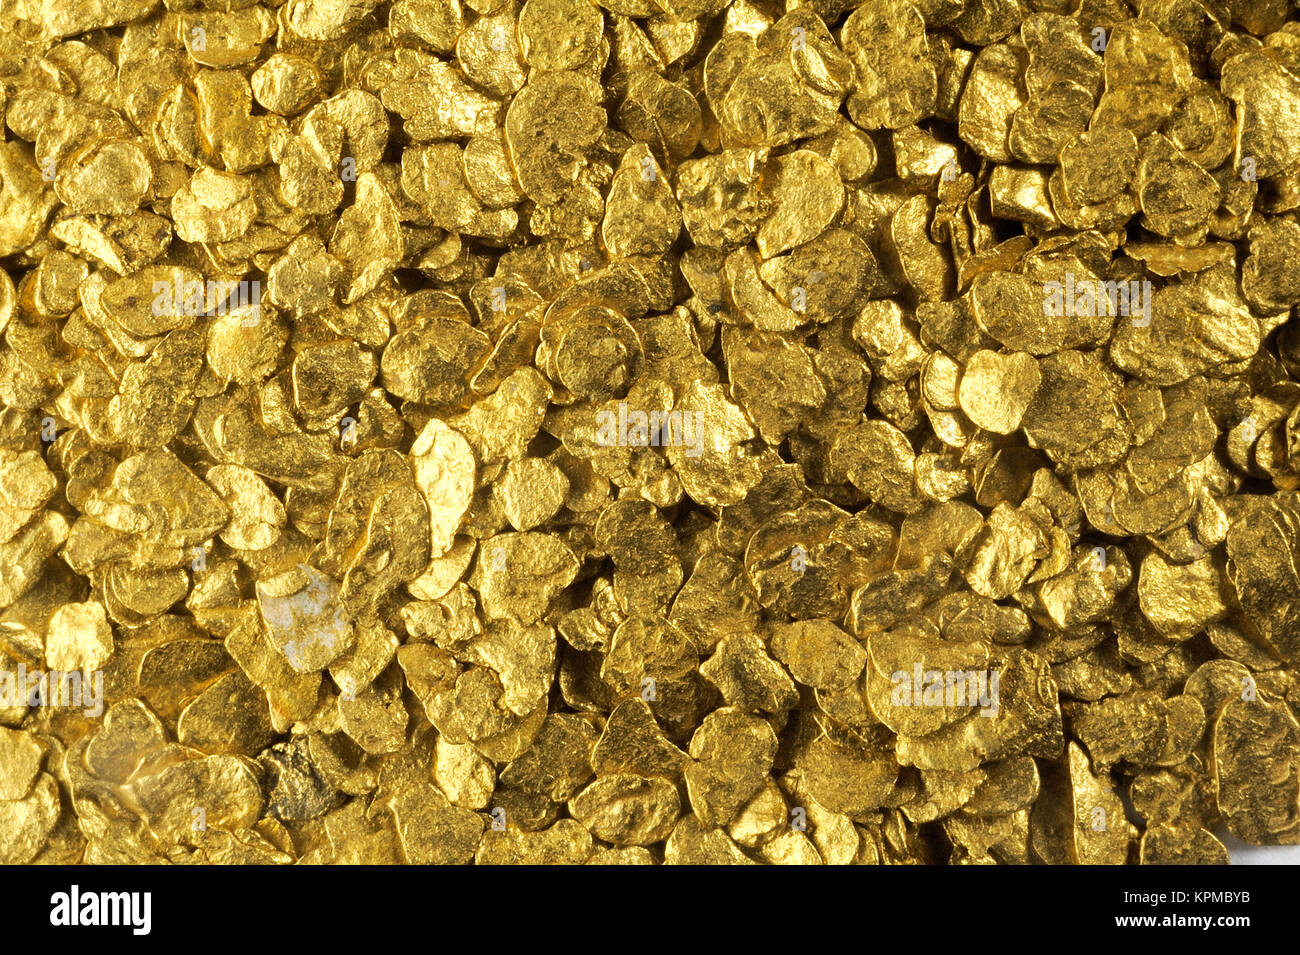 File:Placer gold flakes (Drava River, Murakeresztúr, Hungary).jpg -  Wikimedia Commons